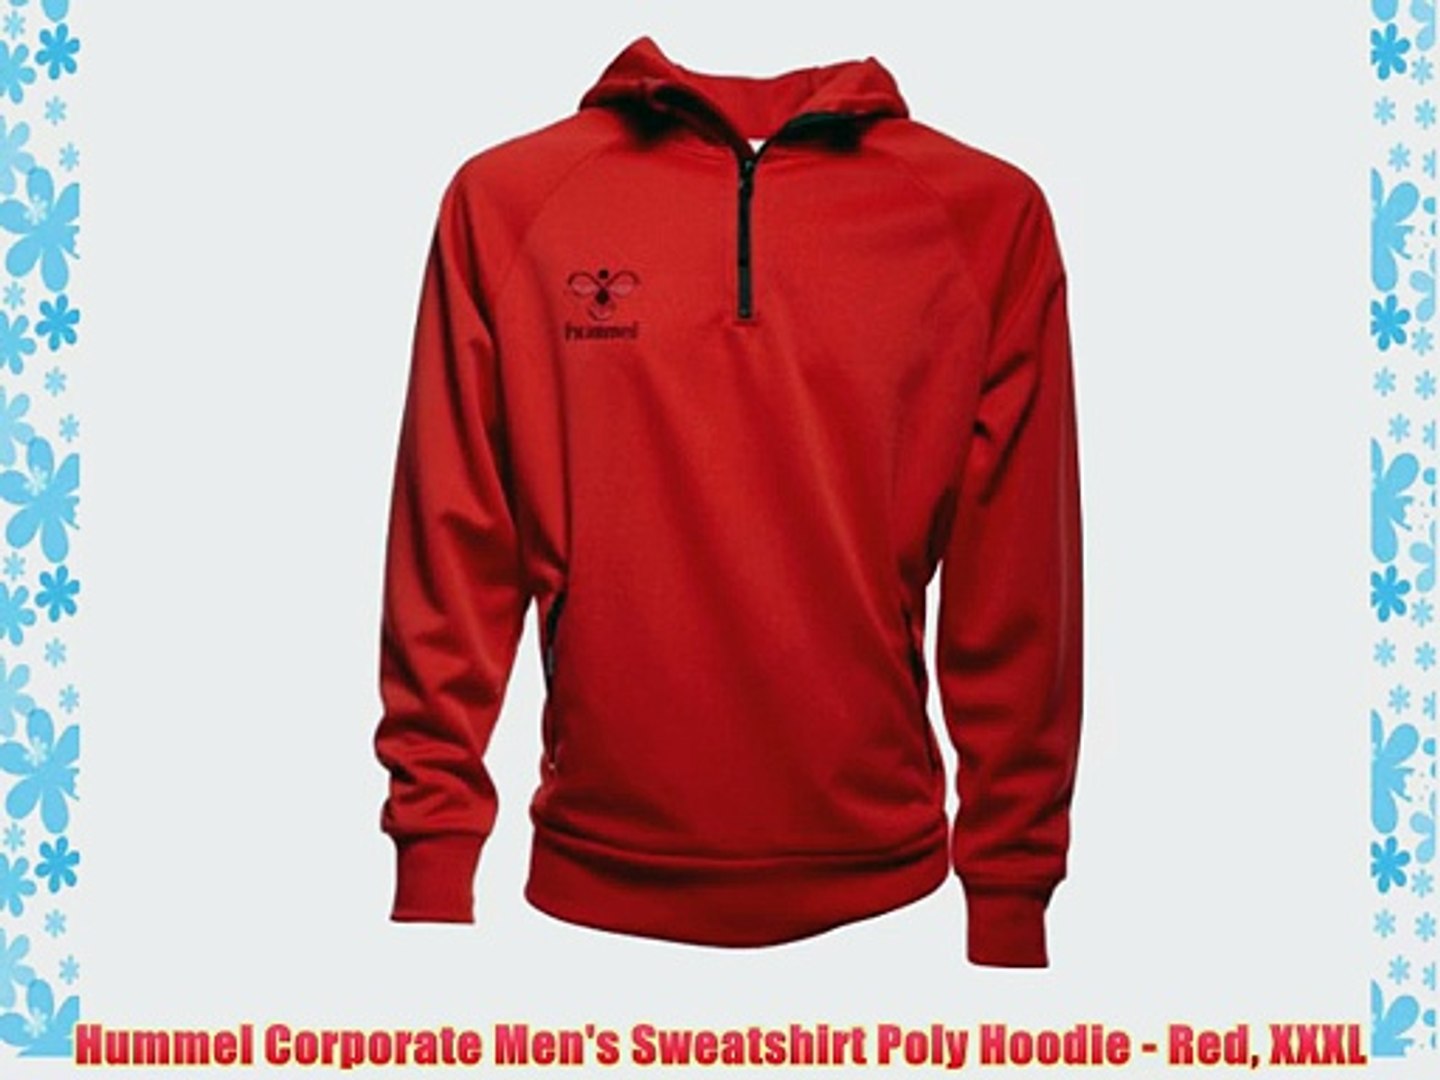 Hummel Corporate Men's Sweatshirt - Red - video